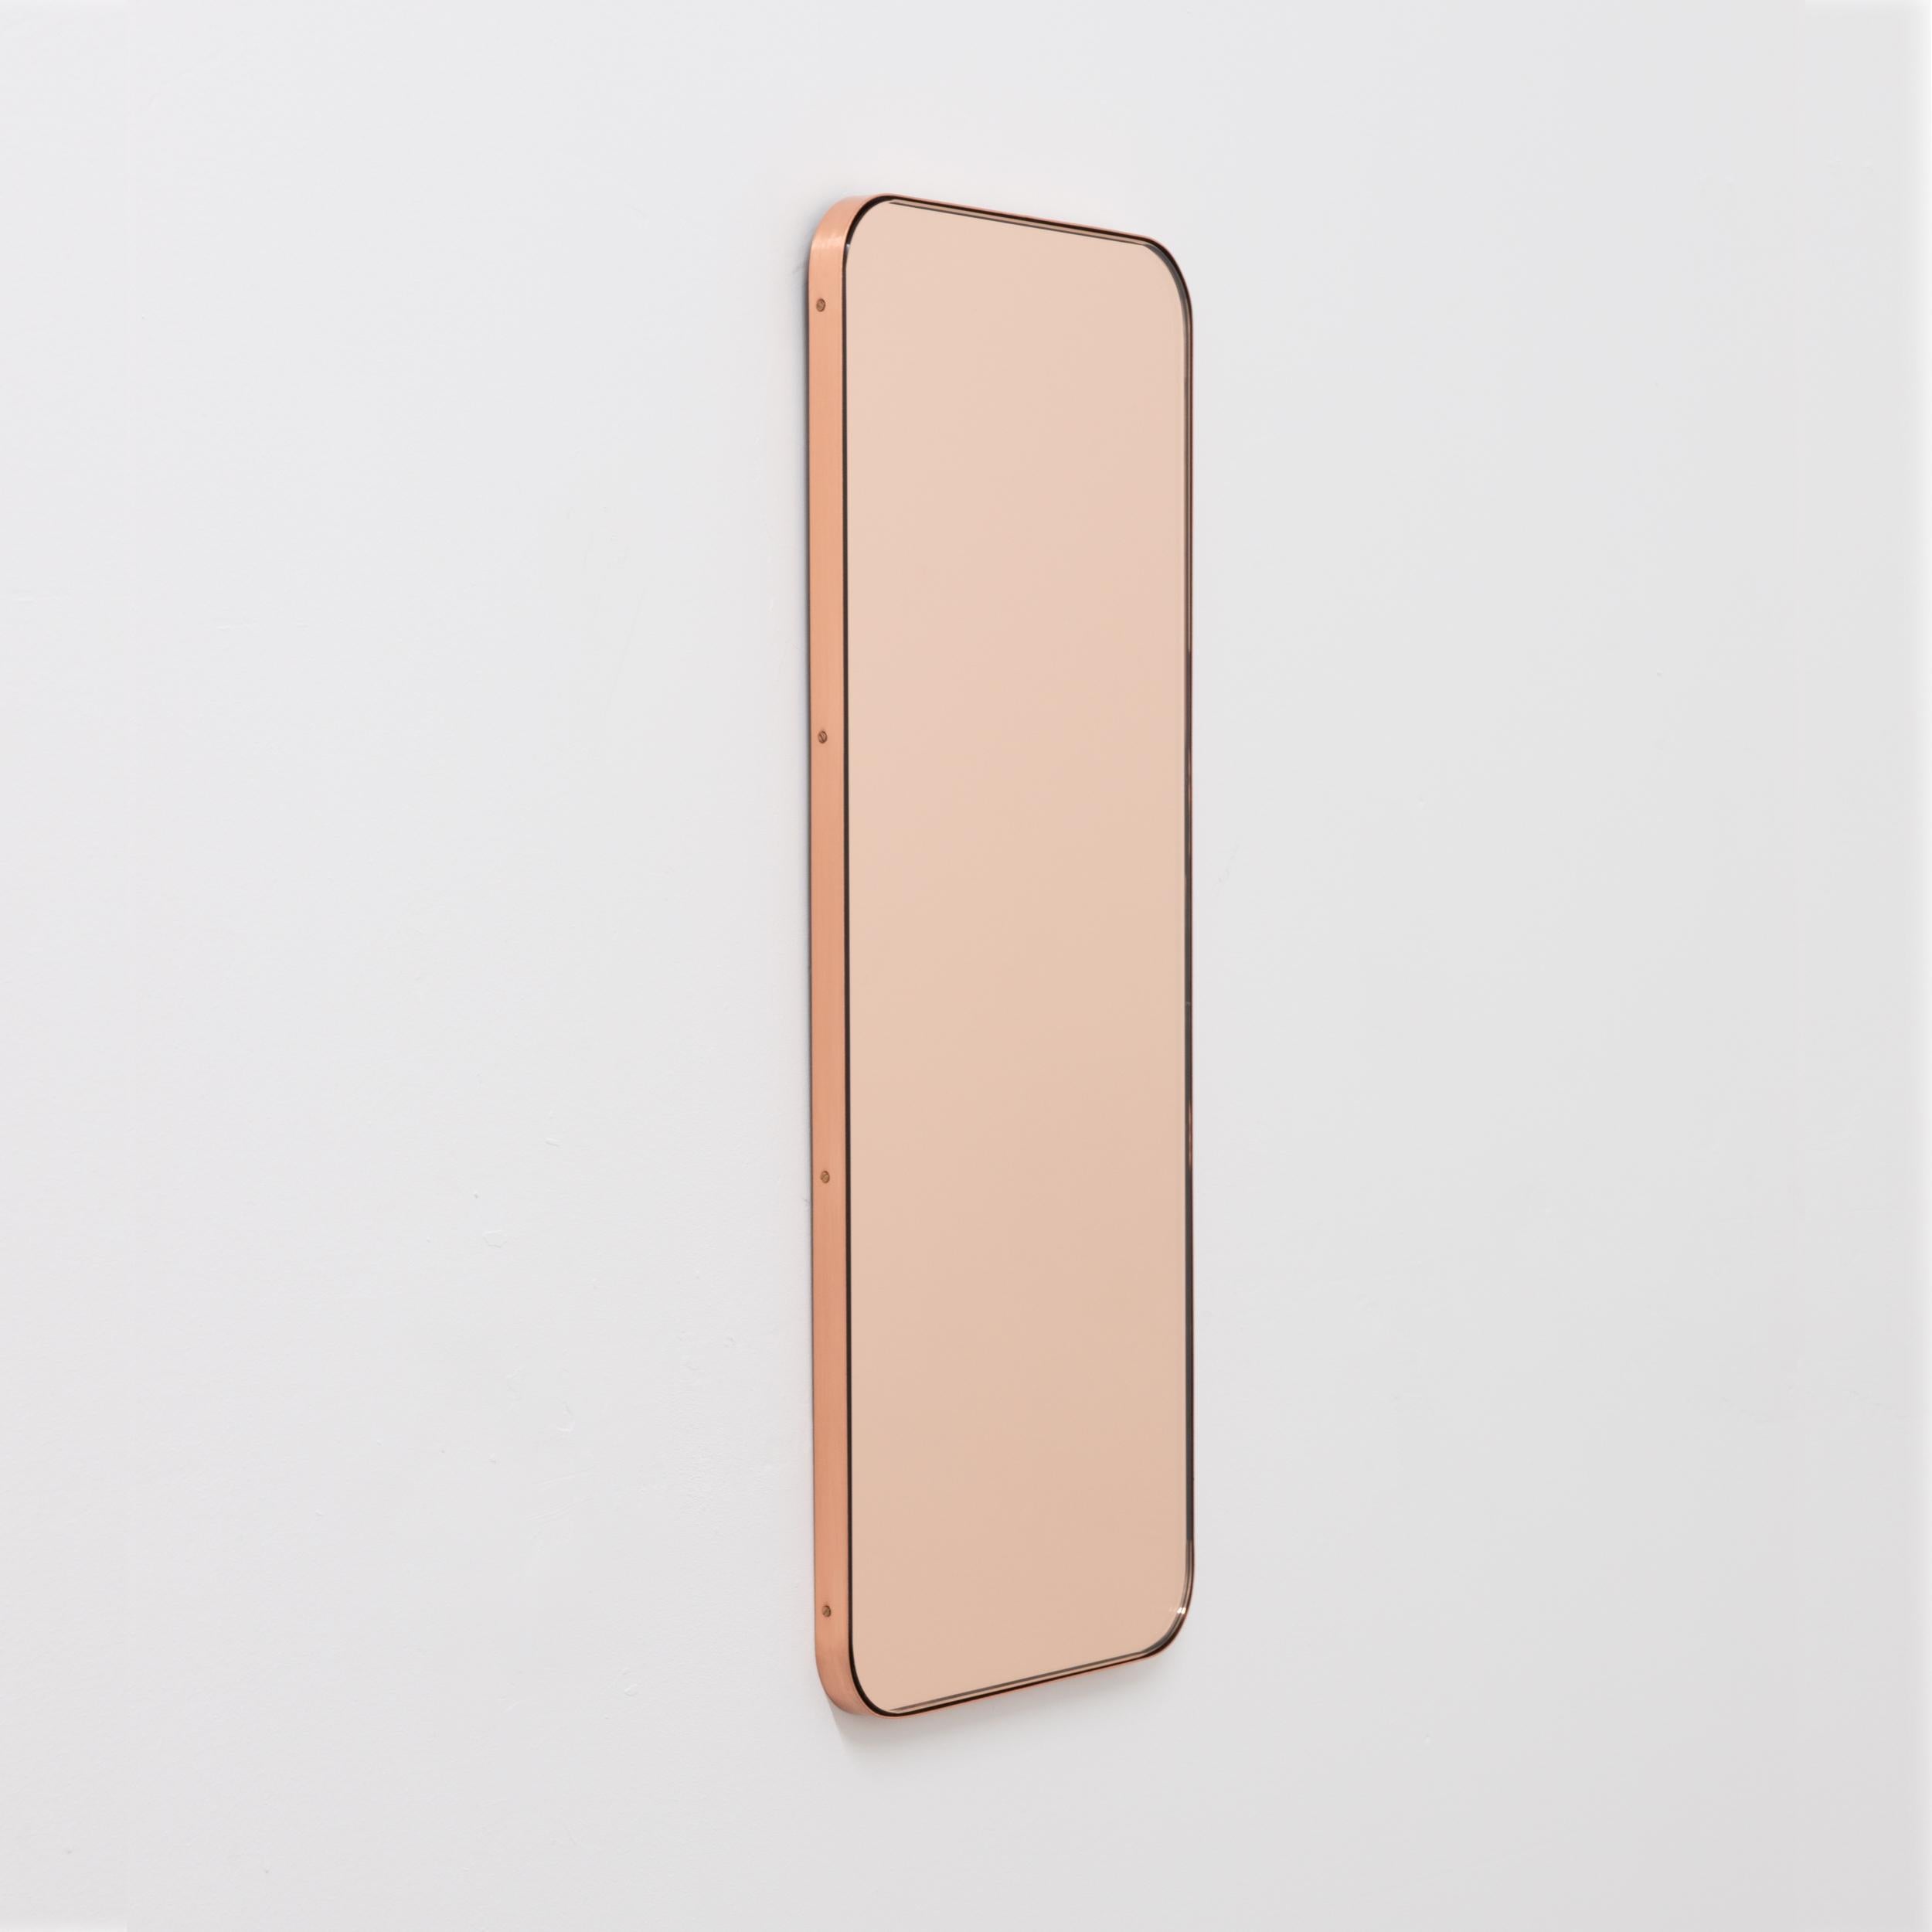 Minimalistischer, rechteckiger Spiegel mit einem eleganten, schlanken Rahmen aus gebürstetem Kupfer. Die Details und die Verarbeitung, einschließlich der sichtbaren verkupferten Schrauben, unterstreichen die handwerkliche Qualität des Spiegels, ein